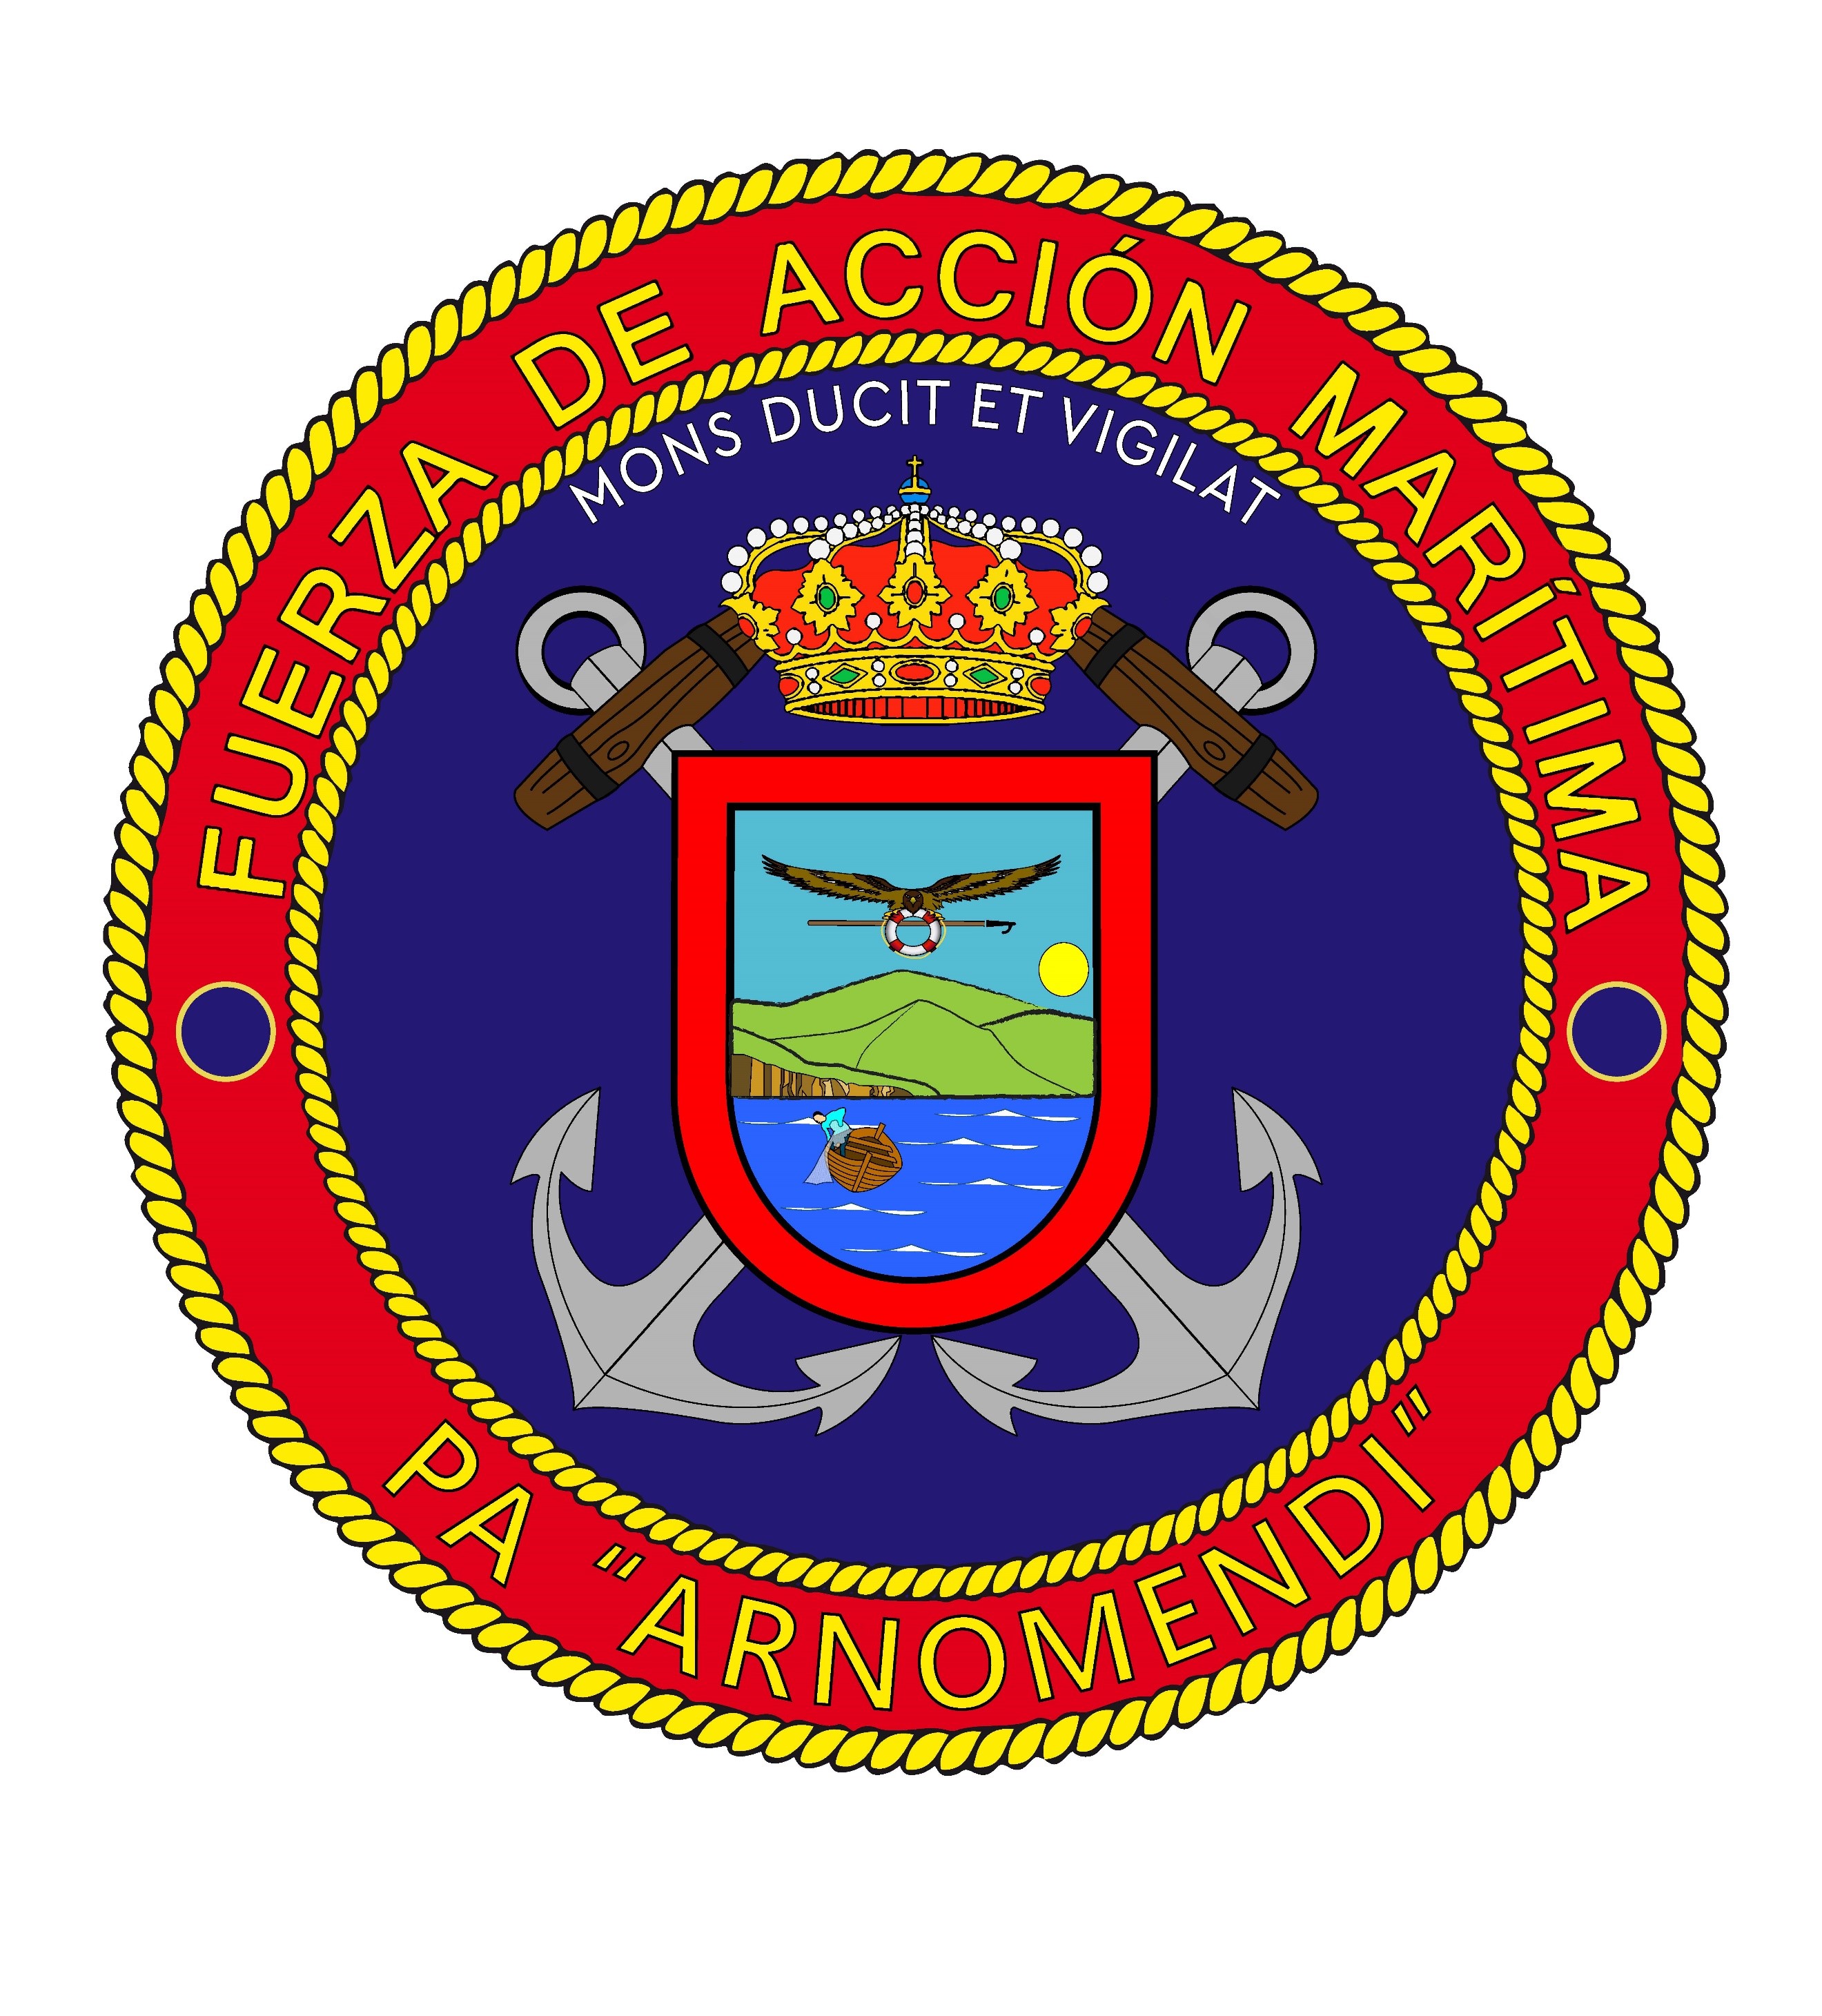 Patrol boat 'Arnomendi' Coat of Arms